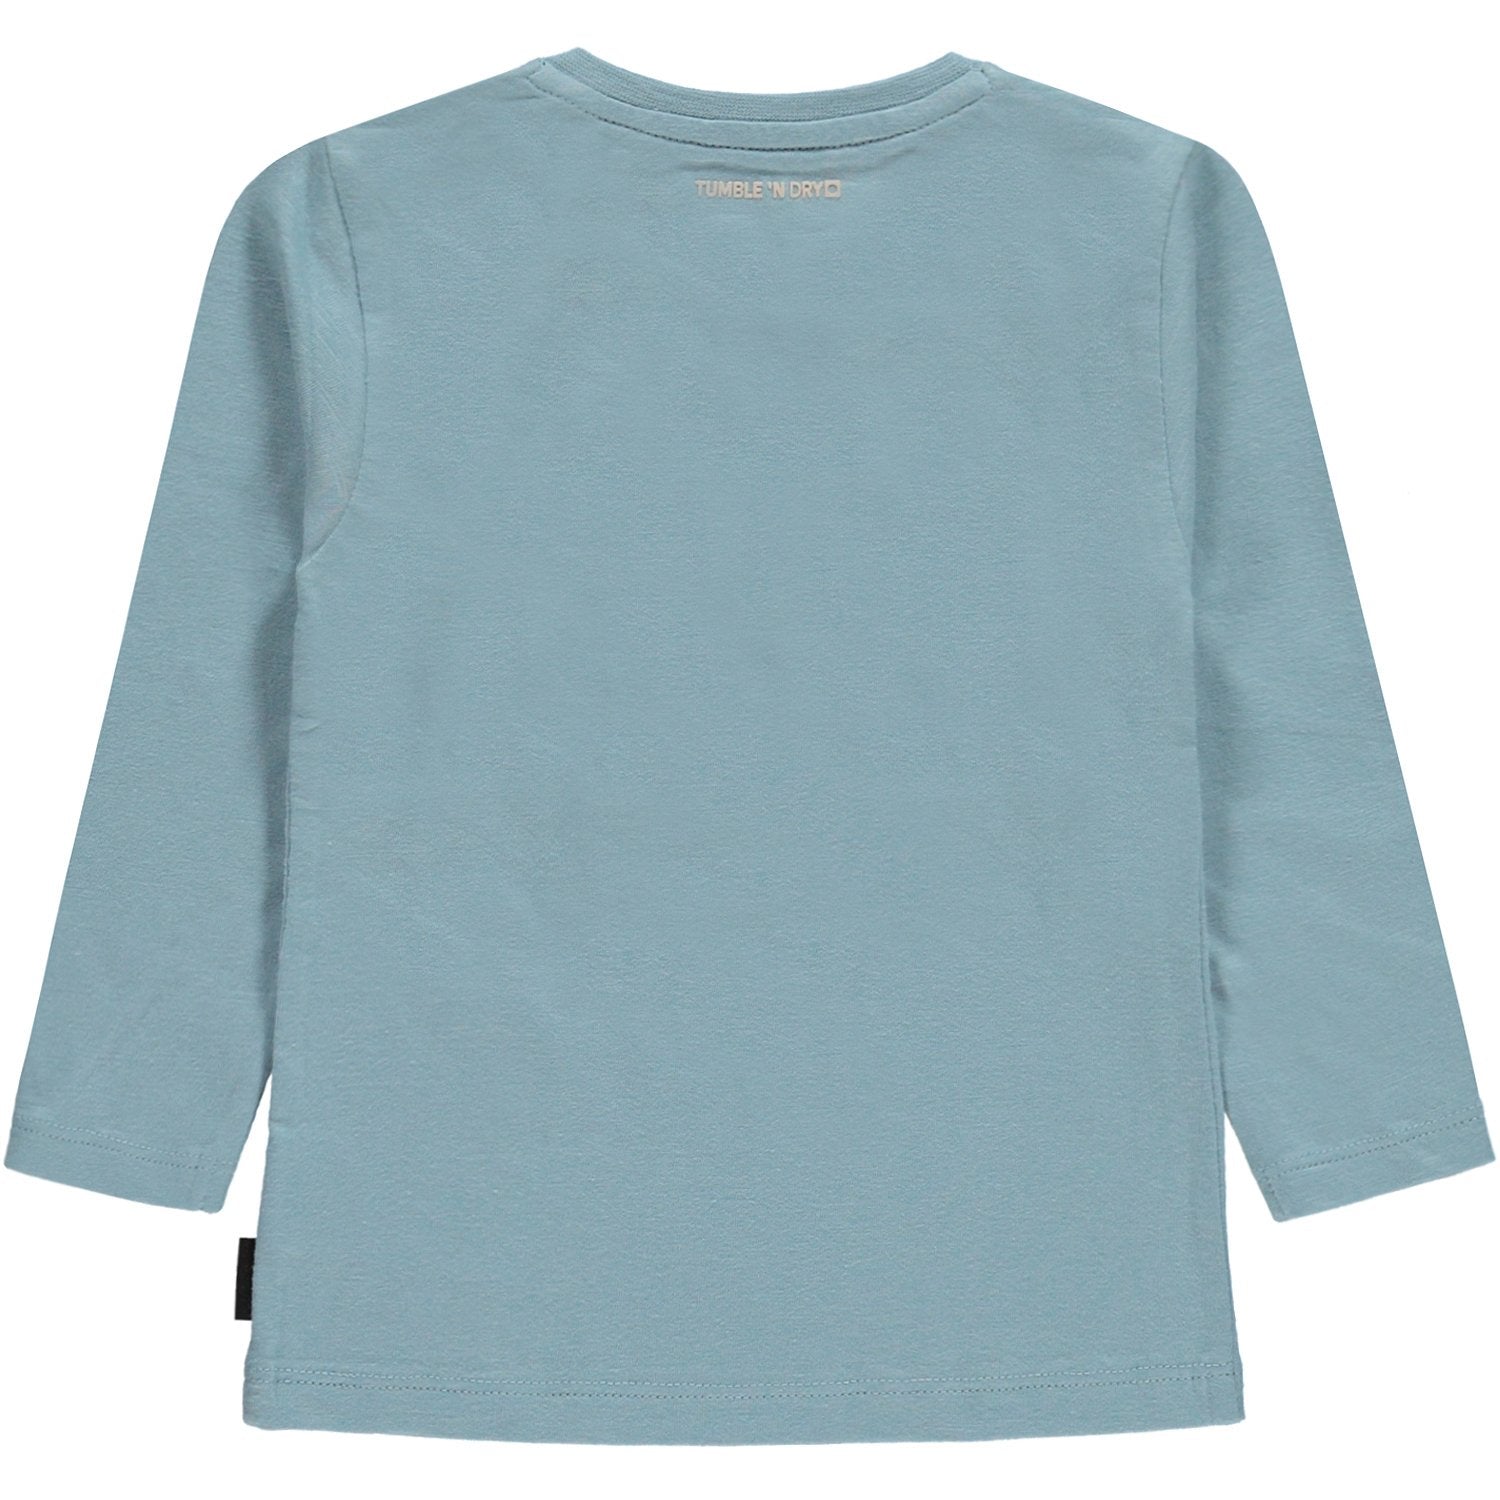 Baby Jongens T-shirt Lm O-hals van Tumble 'n Dry in de kleur Light steel blue in maat 86.